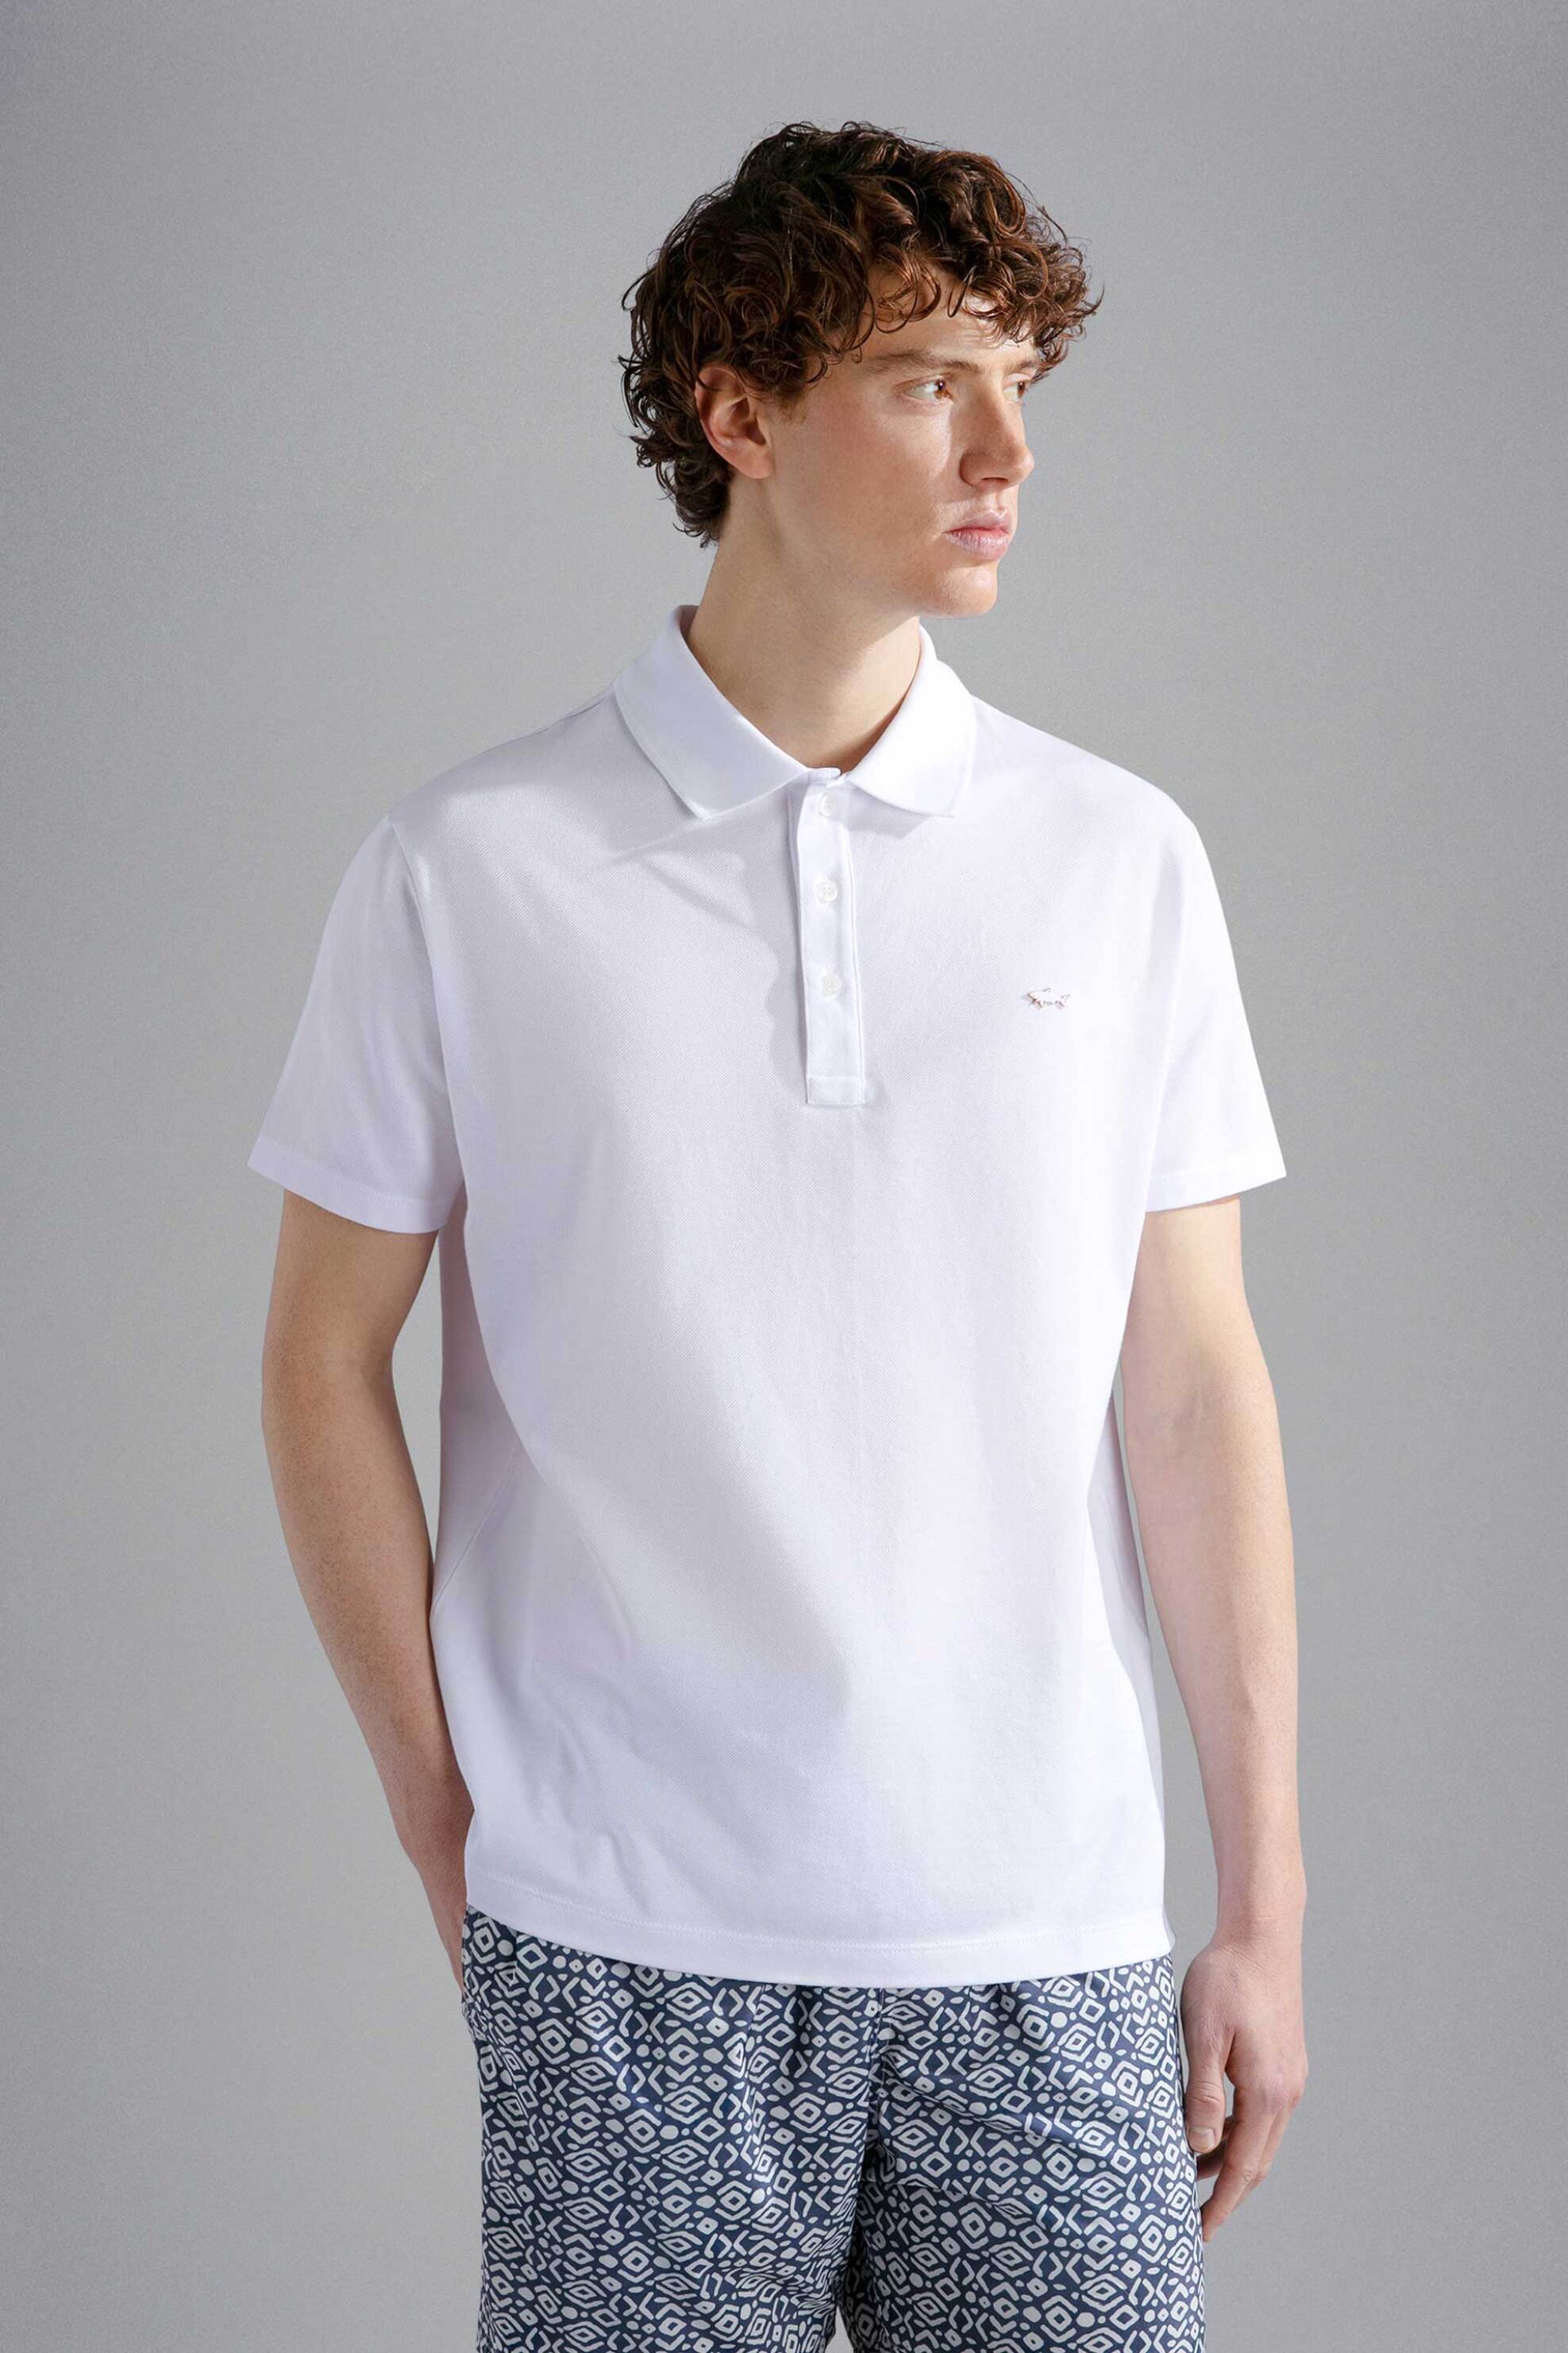 Ανδρική Μόδα > Ανδρικά Ρούχα > Ανδρικές Μπλούζες > Ανδρικές Μπλούζες Πολο Paul&Shark ανδρική μπλούζα πόλο μονόχρωμη - 24411247 Λευκό